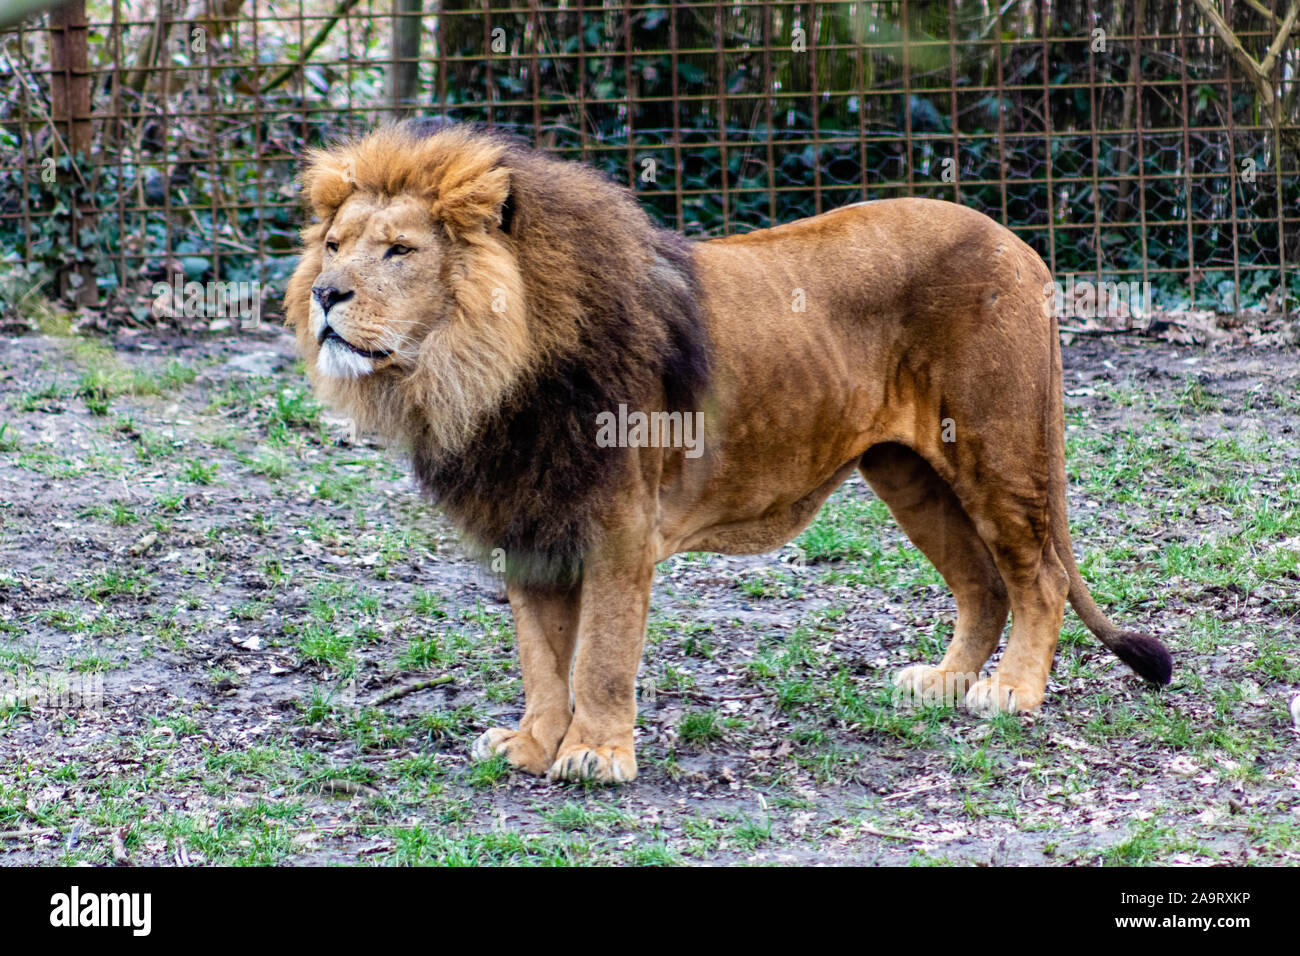 Lion Beobachtung der Gegend in einem Zoo Stockfoto